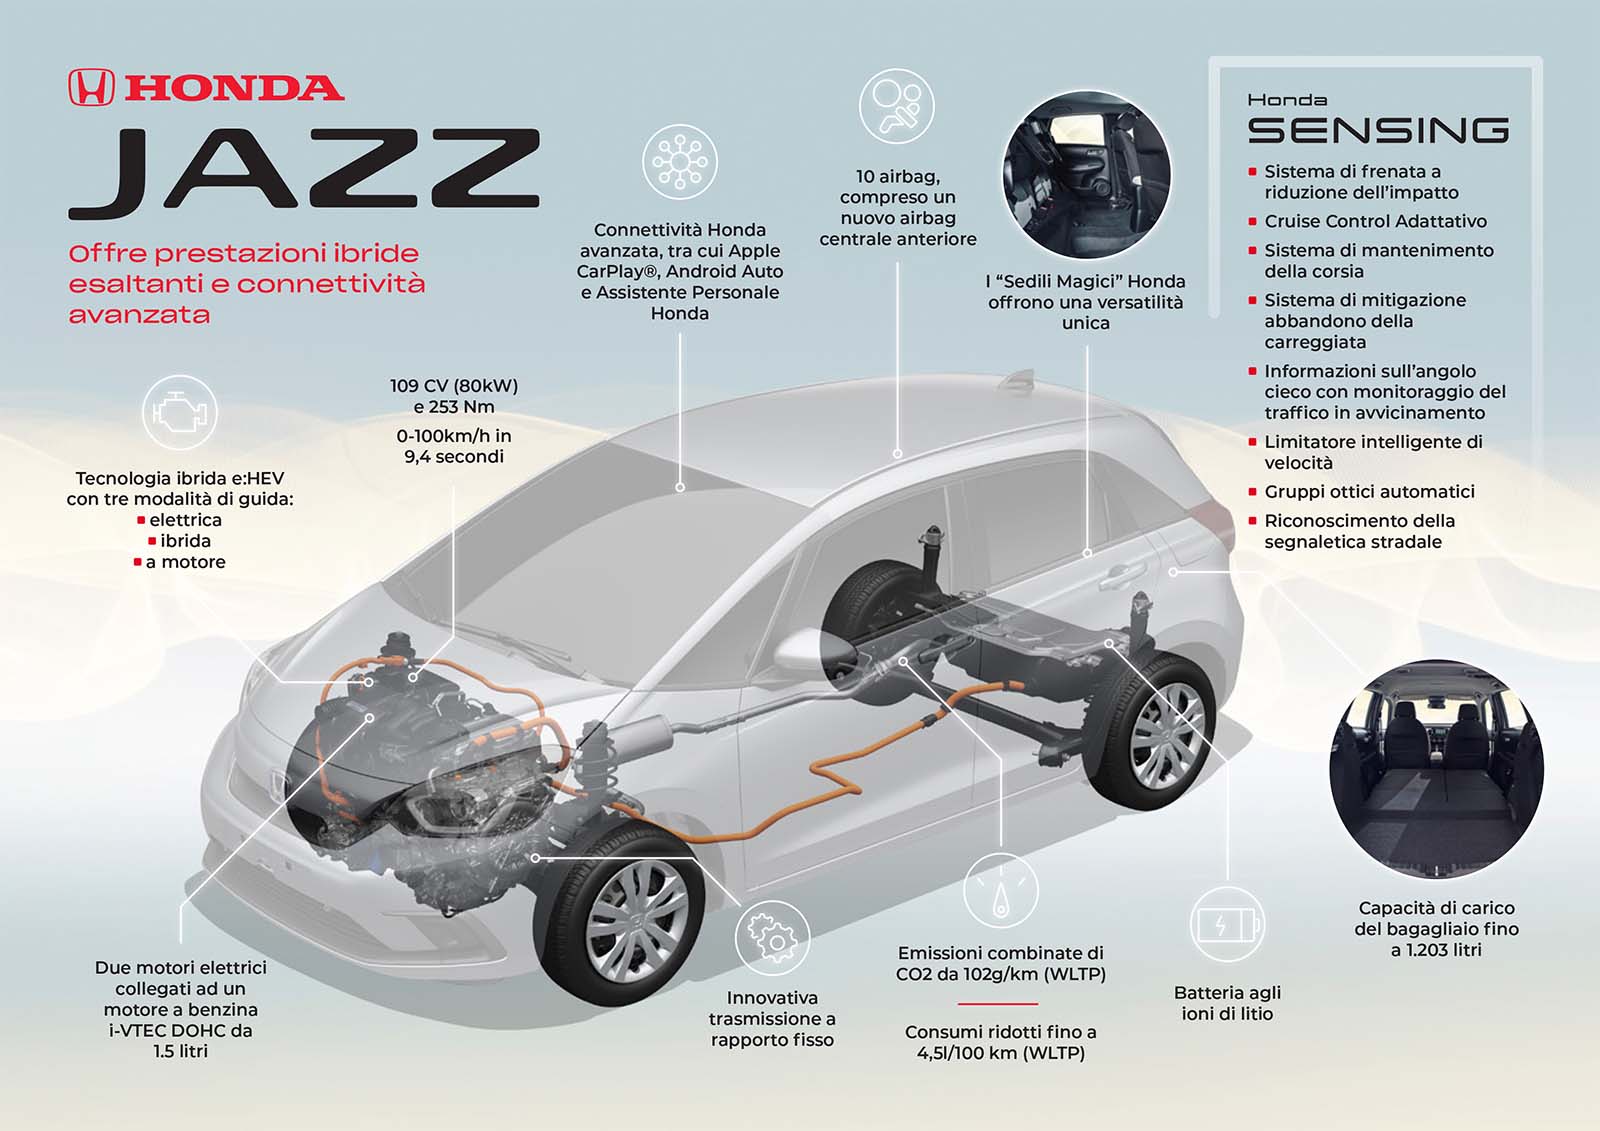 Nella nuova Honda Jazz tecnologia ibrida e:HEV con tre diverse modalità di guida